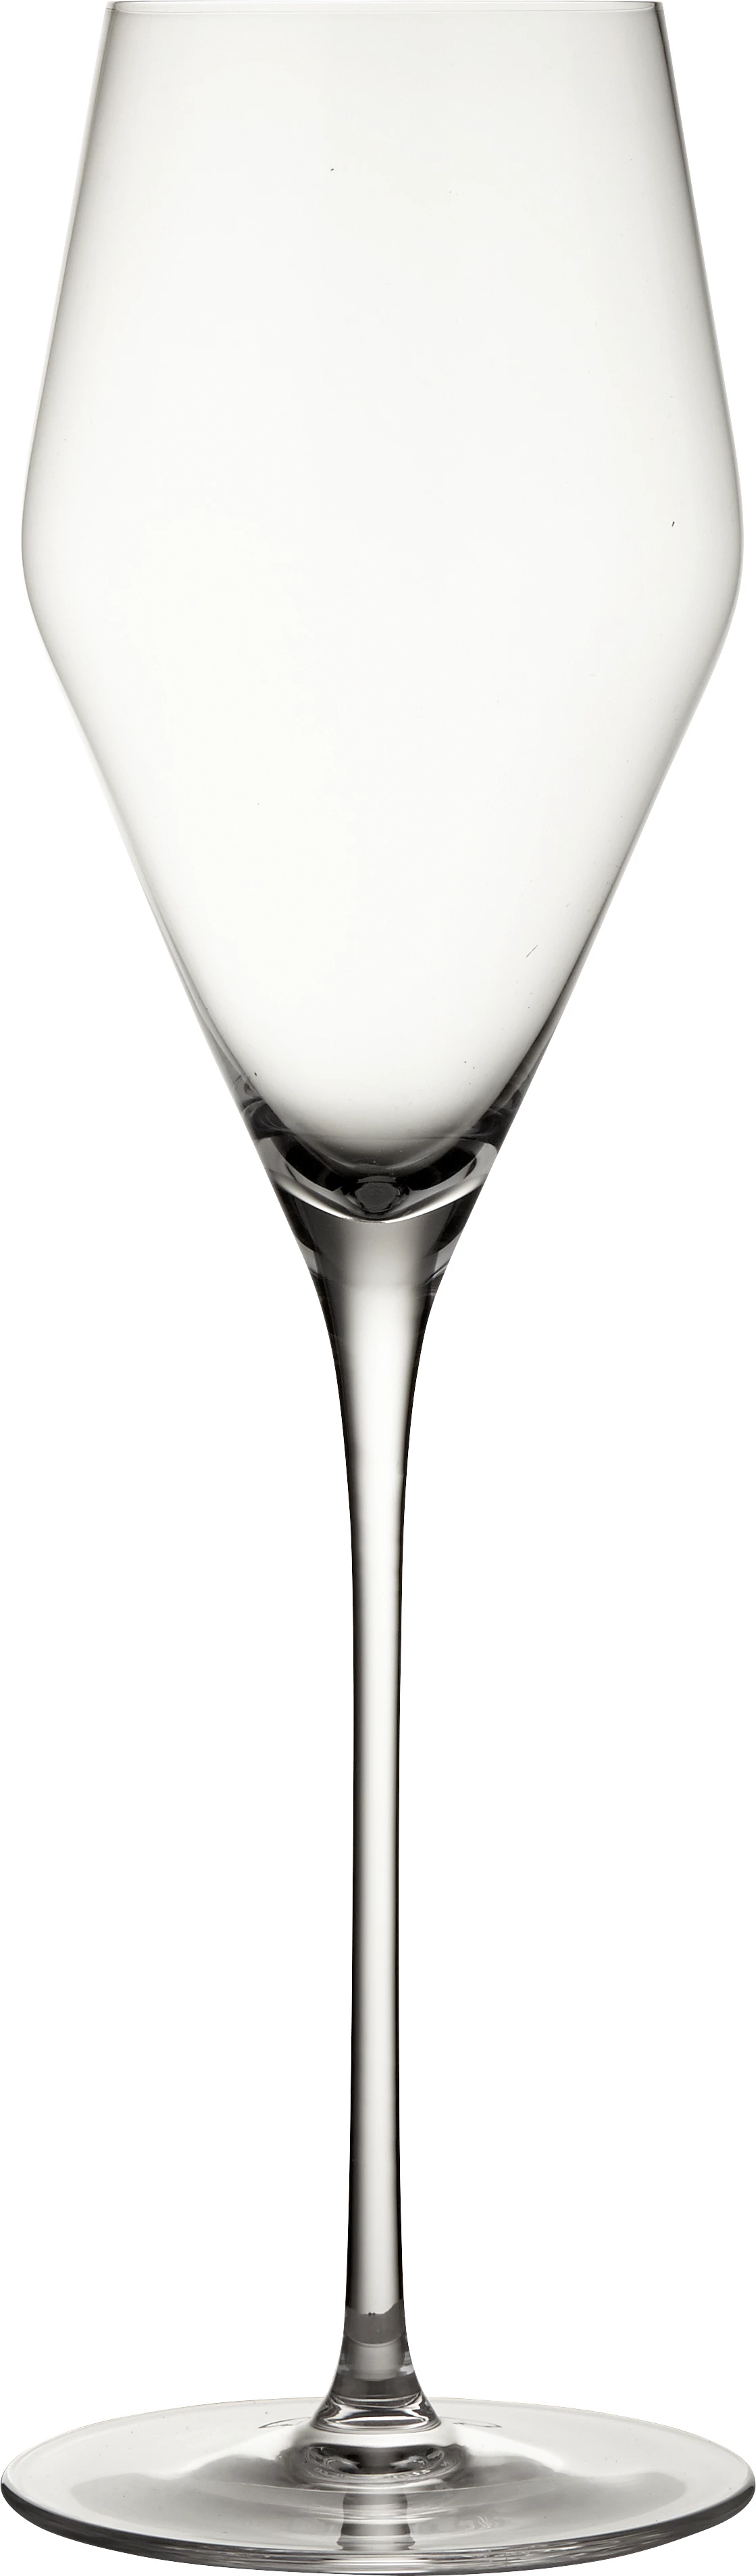 Zalto champagneglas (2 stk.), 22 cl